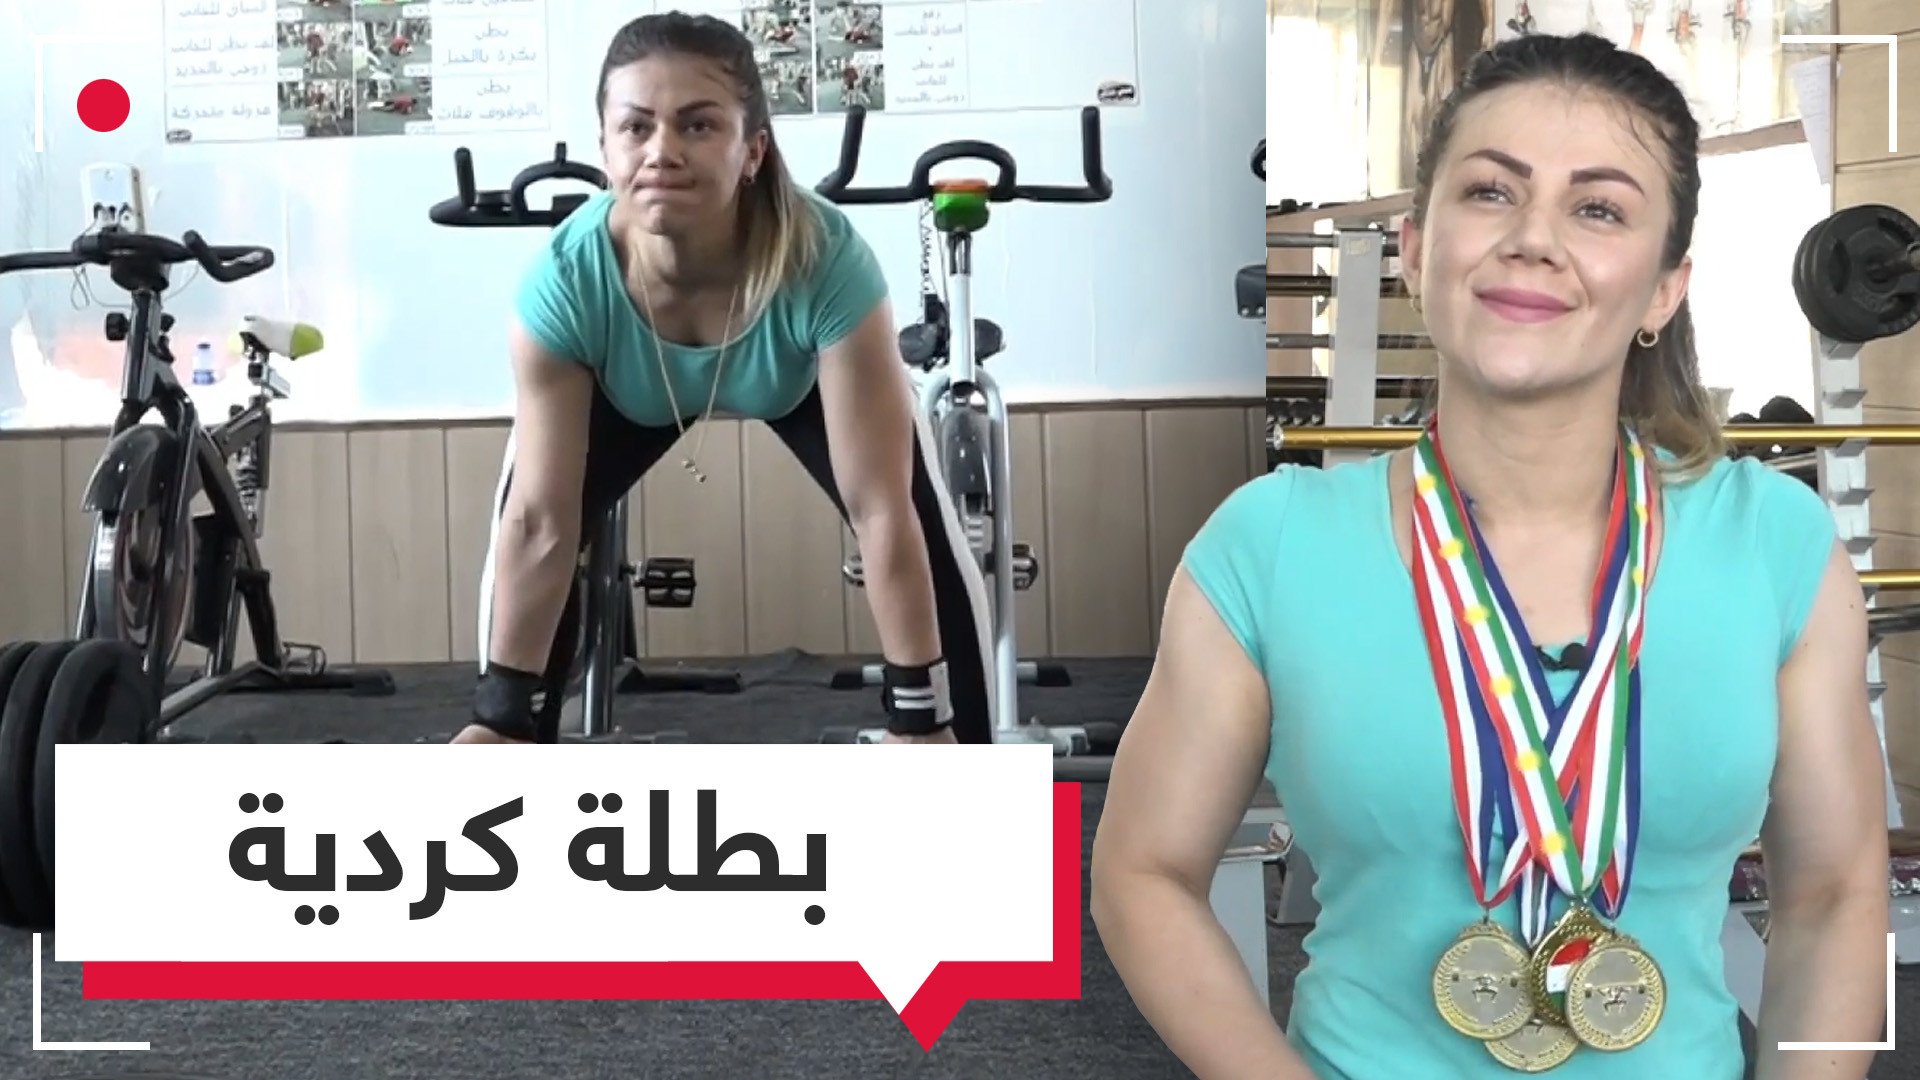 بطلة في رياضة كمال الأجسام من كردستان العراق تحلم بالعالمية 